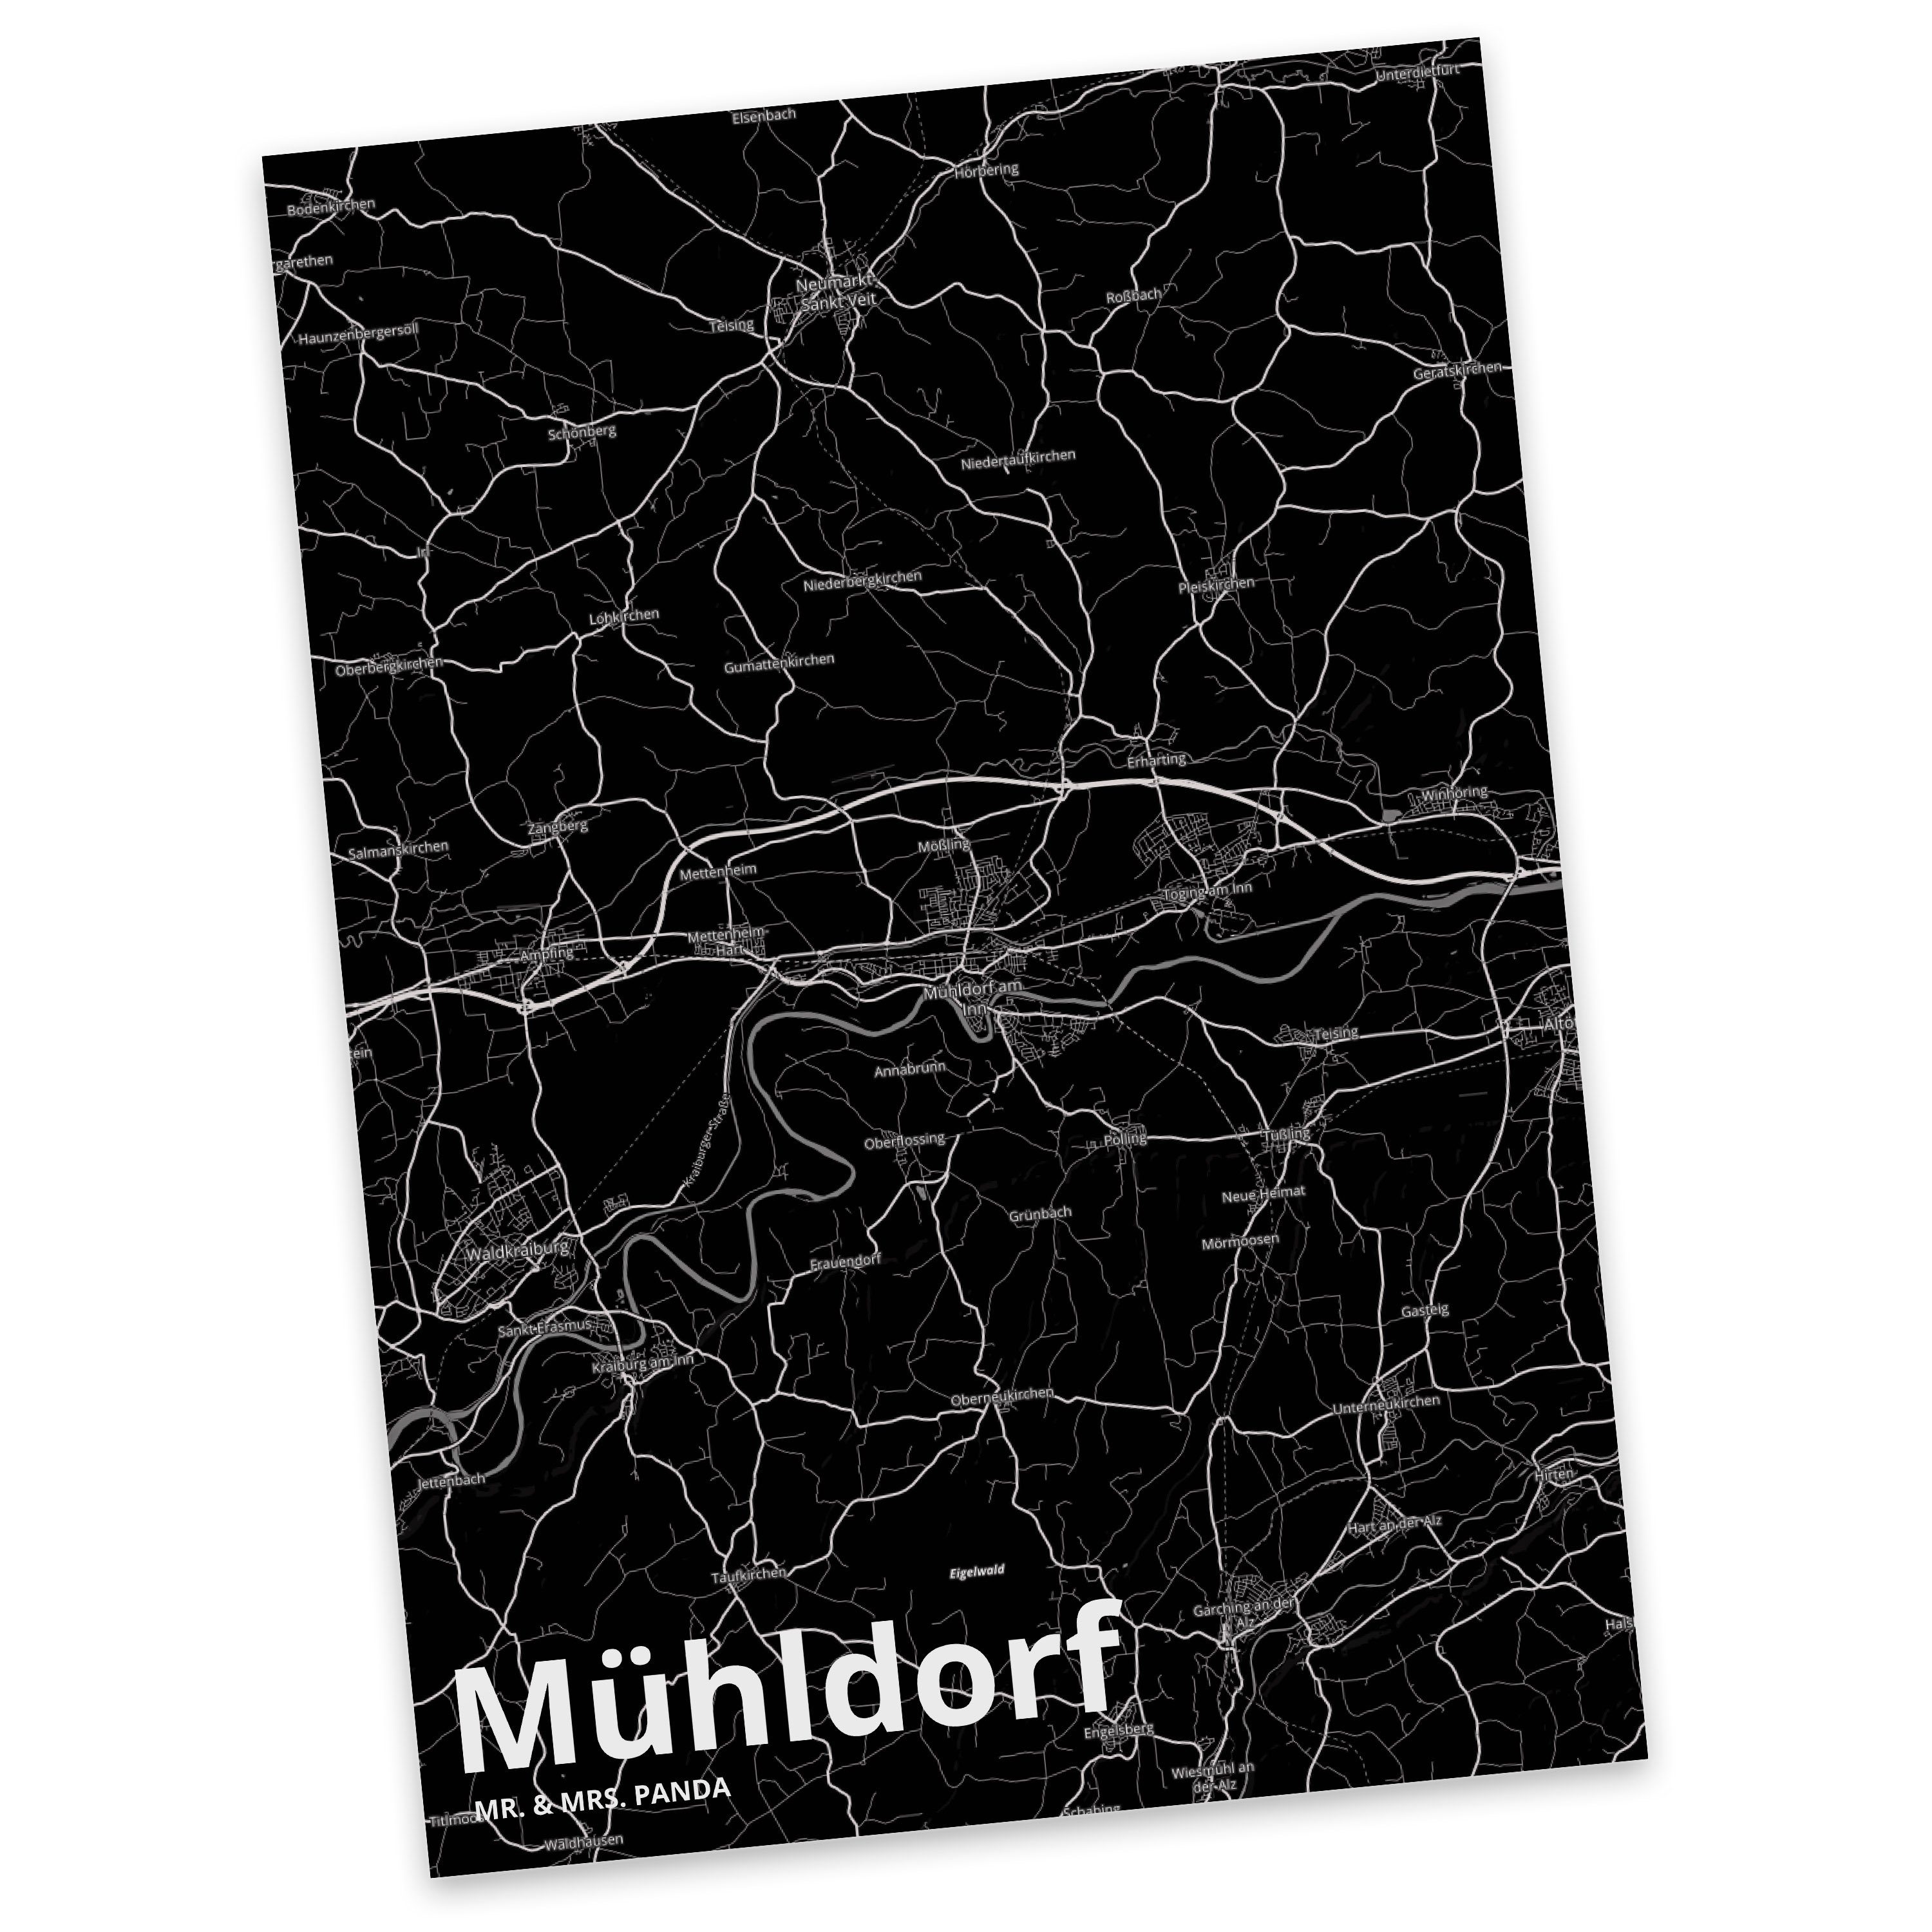 Mr. & Mrs. Panda Postkarte Mühldorf - Geschenk, Einladung, Städte, Grußkarte, Stadt, Einladungsk